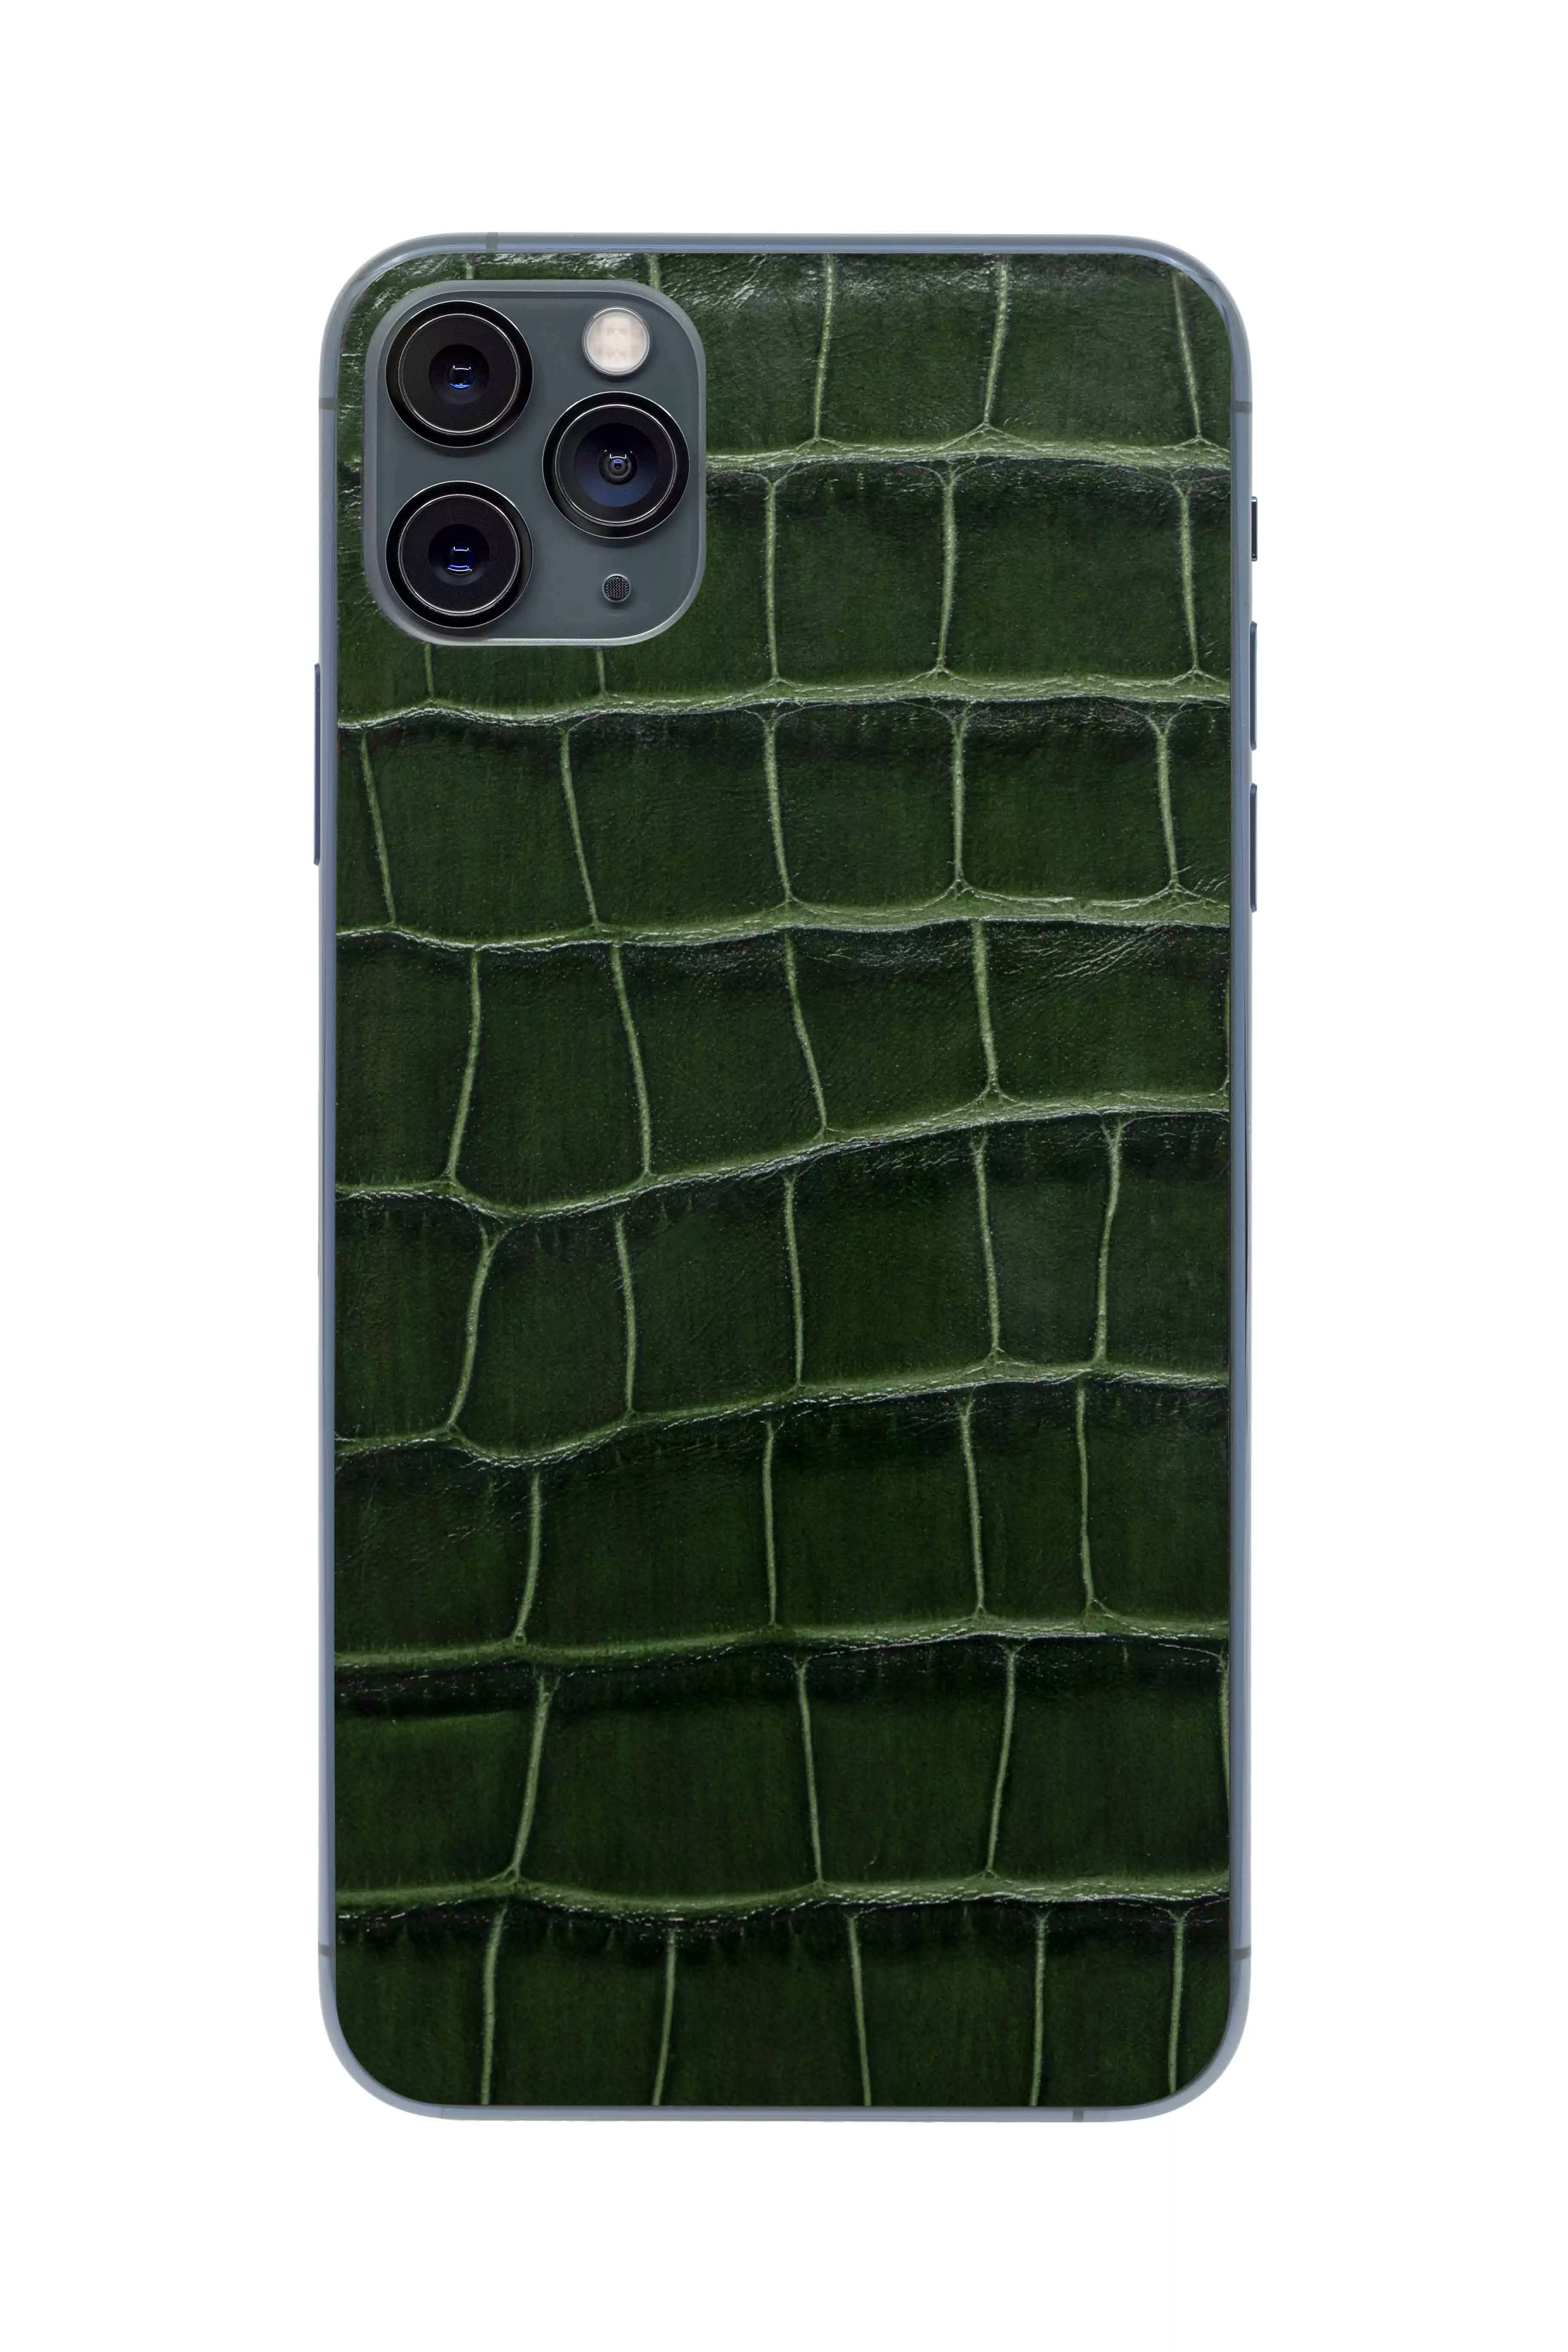 Купить Защитная наклейка из натуральной кожи для iPhone 11 Pro Max, Вид Темно-зеленый в Сочи. Вид 1